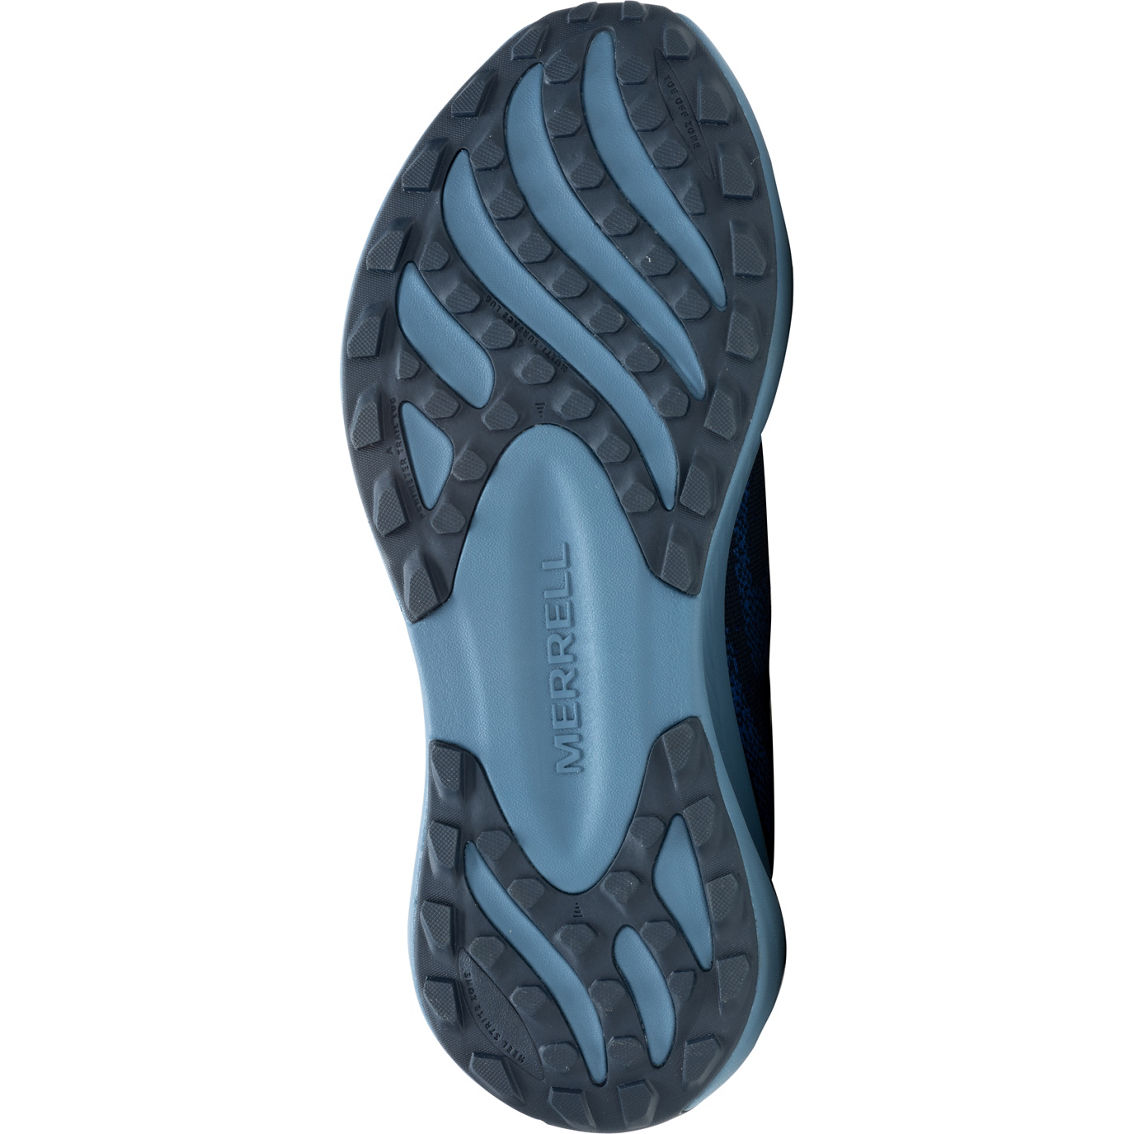 Merrell Men's Morphlite Sea Trail Running Shoes - Image 5 of 6